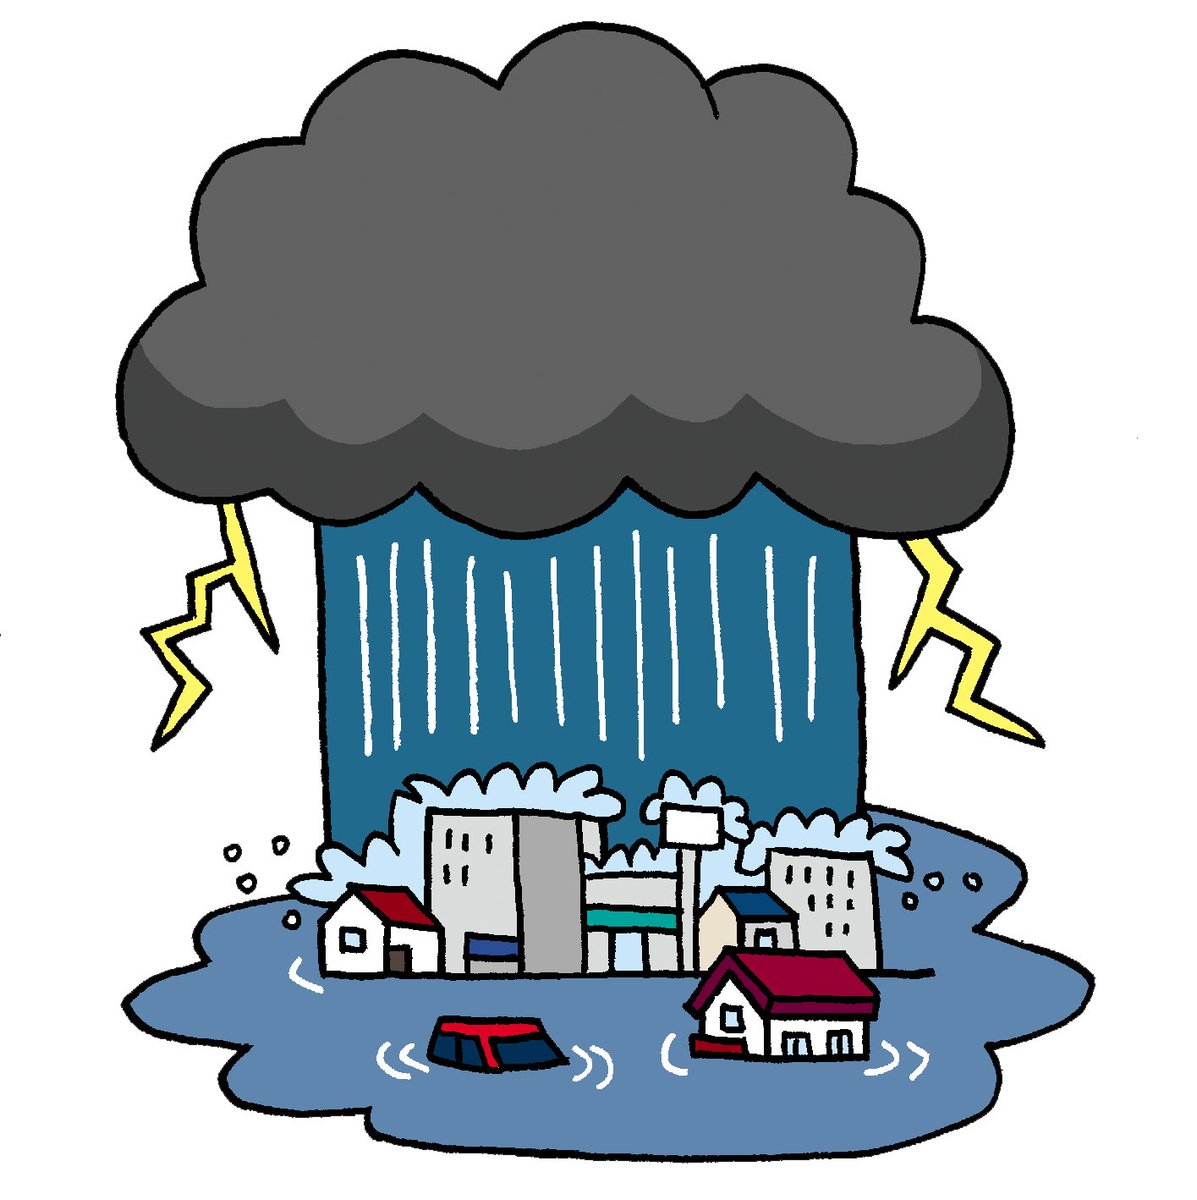 防災無料イラスト 大雨と防災無線のイラスト T Co Jxvdb23dvf 岐阜県と長野県で大雨の特別警報が出ました 大変危険な状況です みなさんの無事をお祈りしております T Co Wbrtrekfnc Twitter